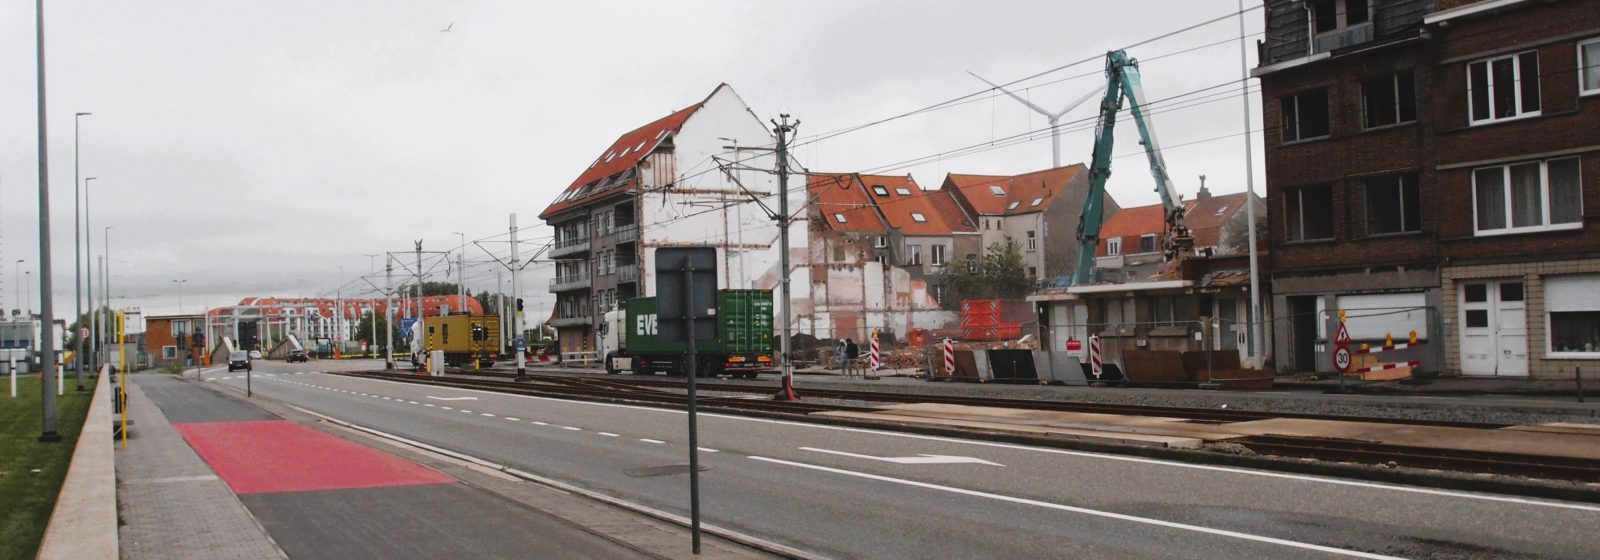 Sloop huizen Kustlaan voor Nieuwe Sluis Zeebrugge